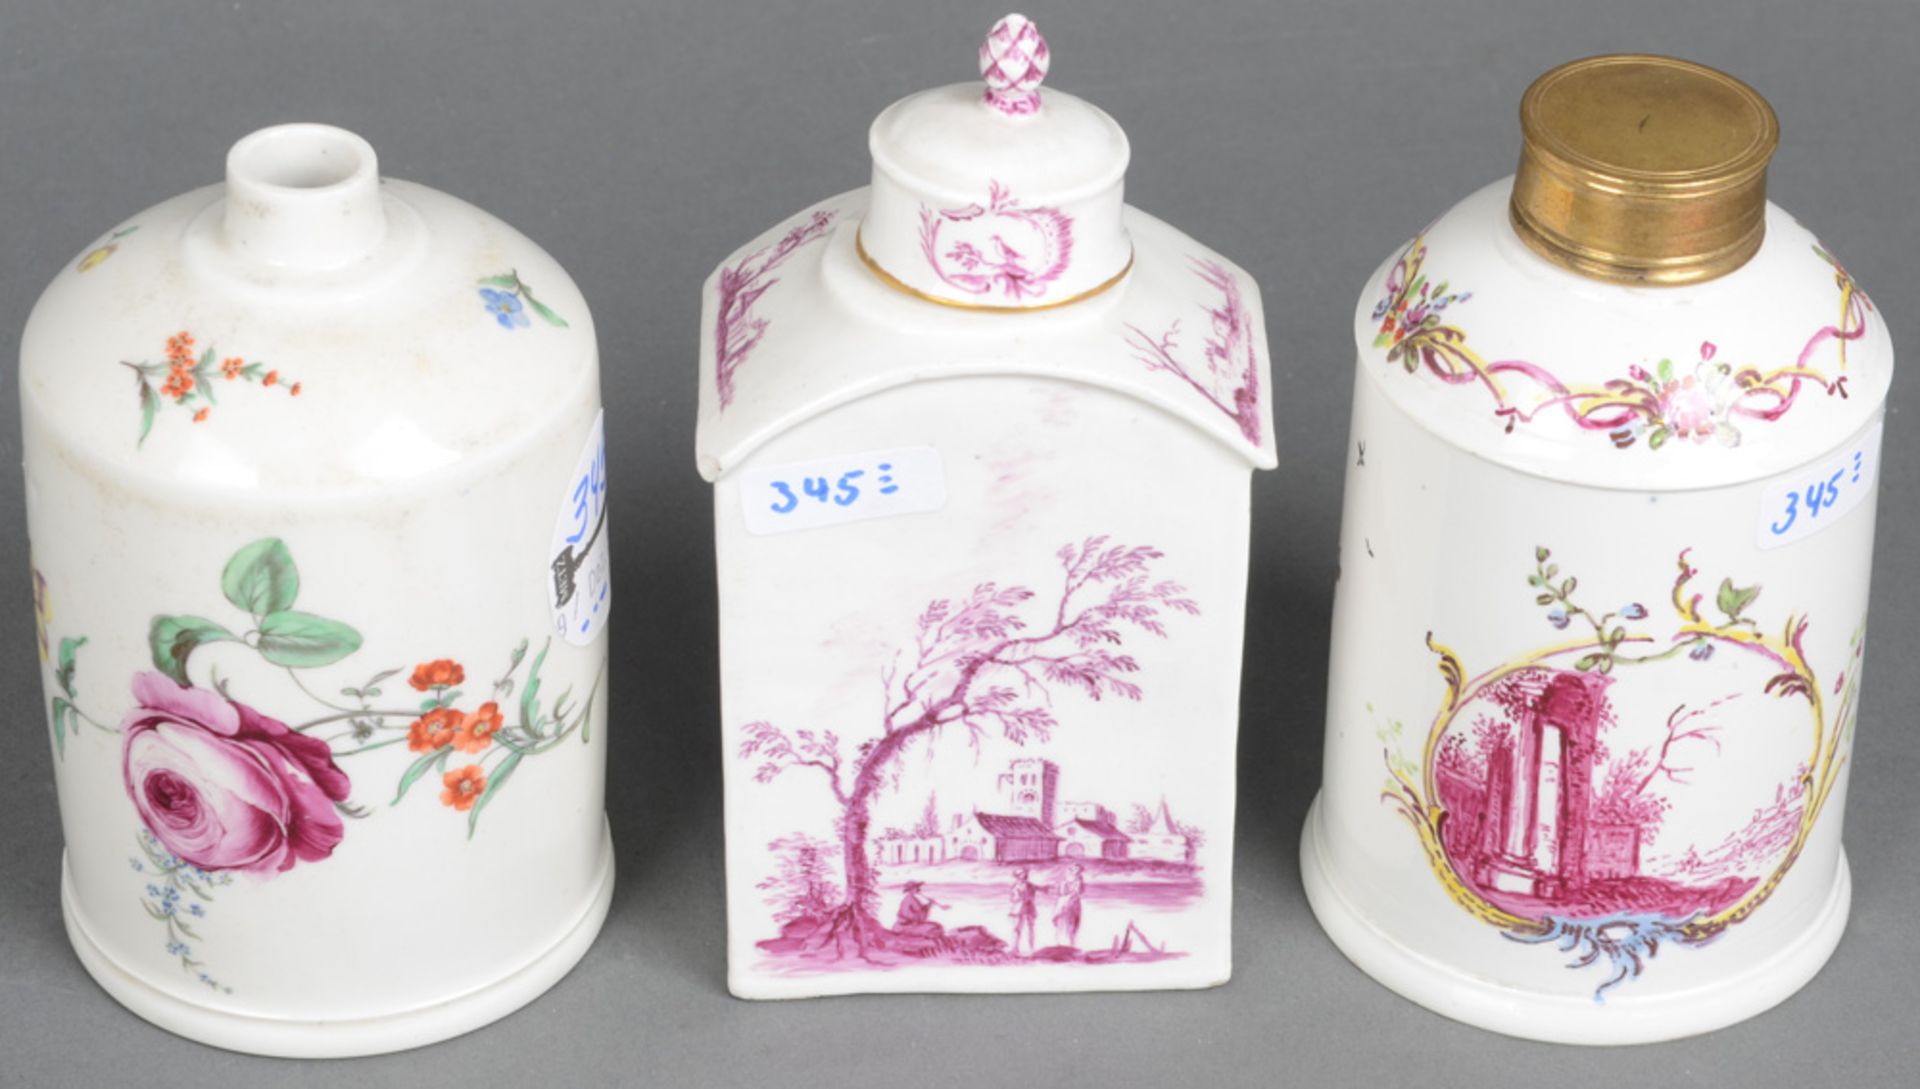 Drei Teedosen. Höchst 1760-70. Porzellan, bunt bzw. purpur bemalt mit Landschaft bzw. Floraldekor.